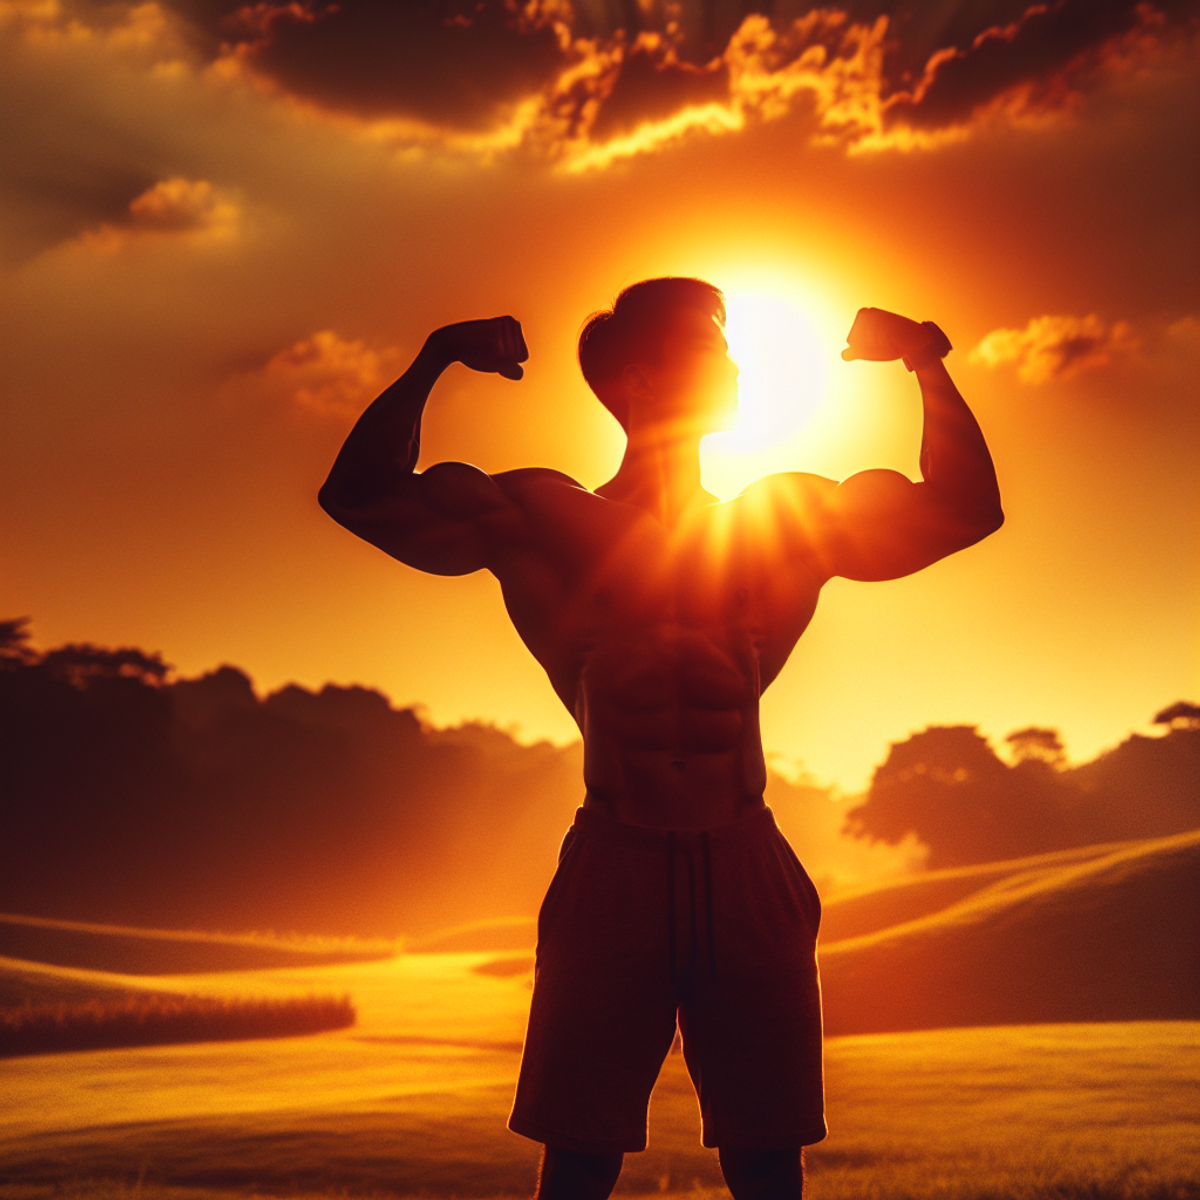 En person med en atletisk bygning og asiatisk afstamning, der står udendørs, bøjer deres fremtrædende muskler på baggrund af en lys, flammende solnedgang.